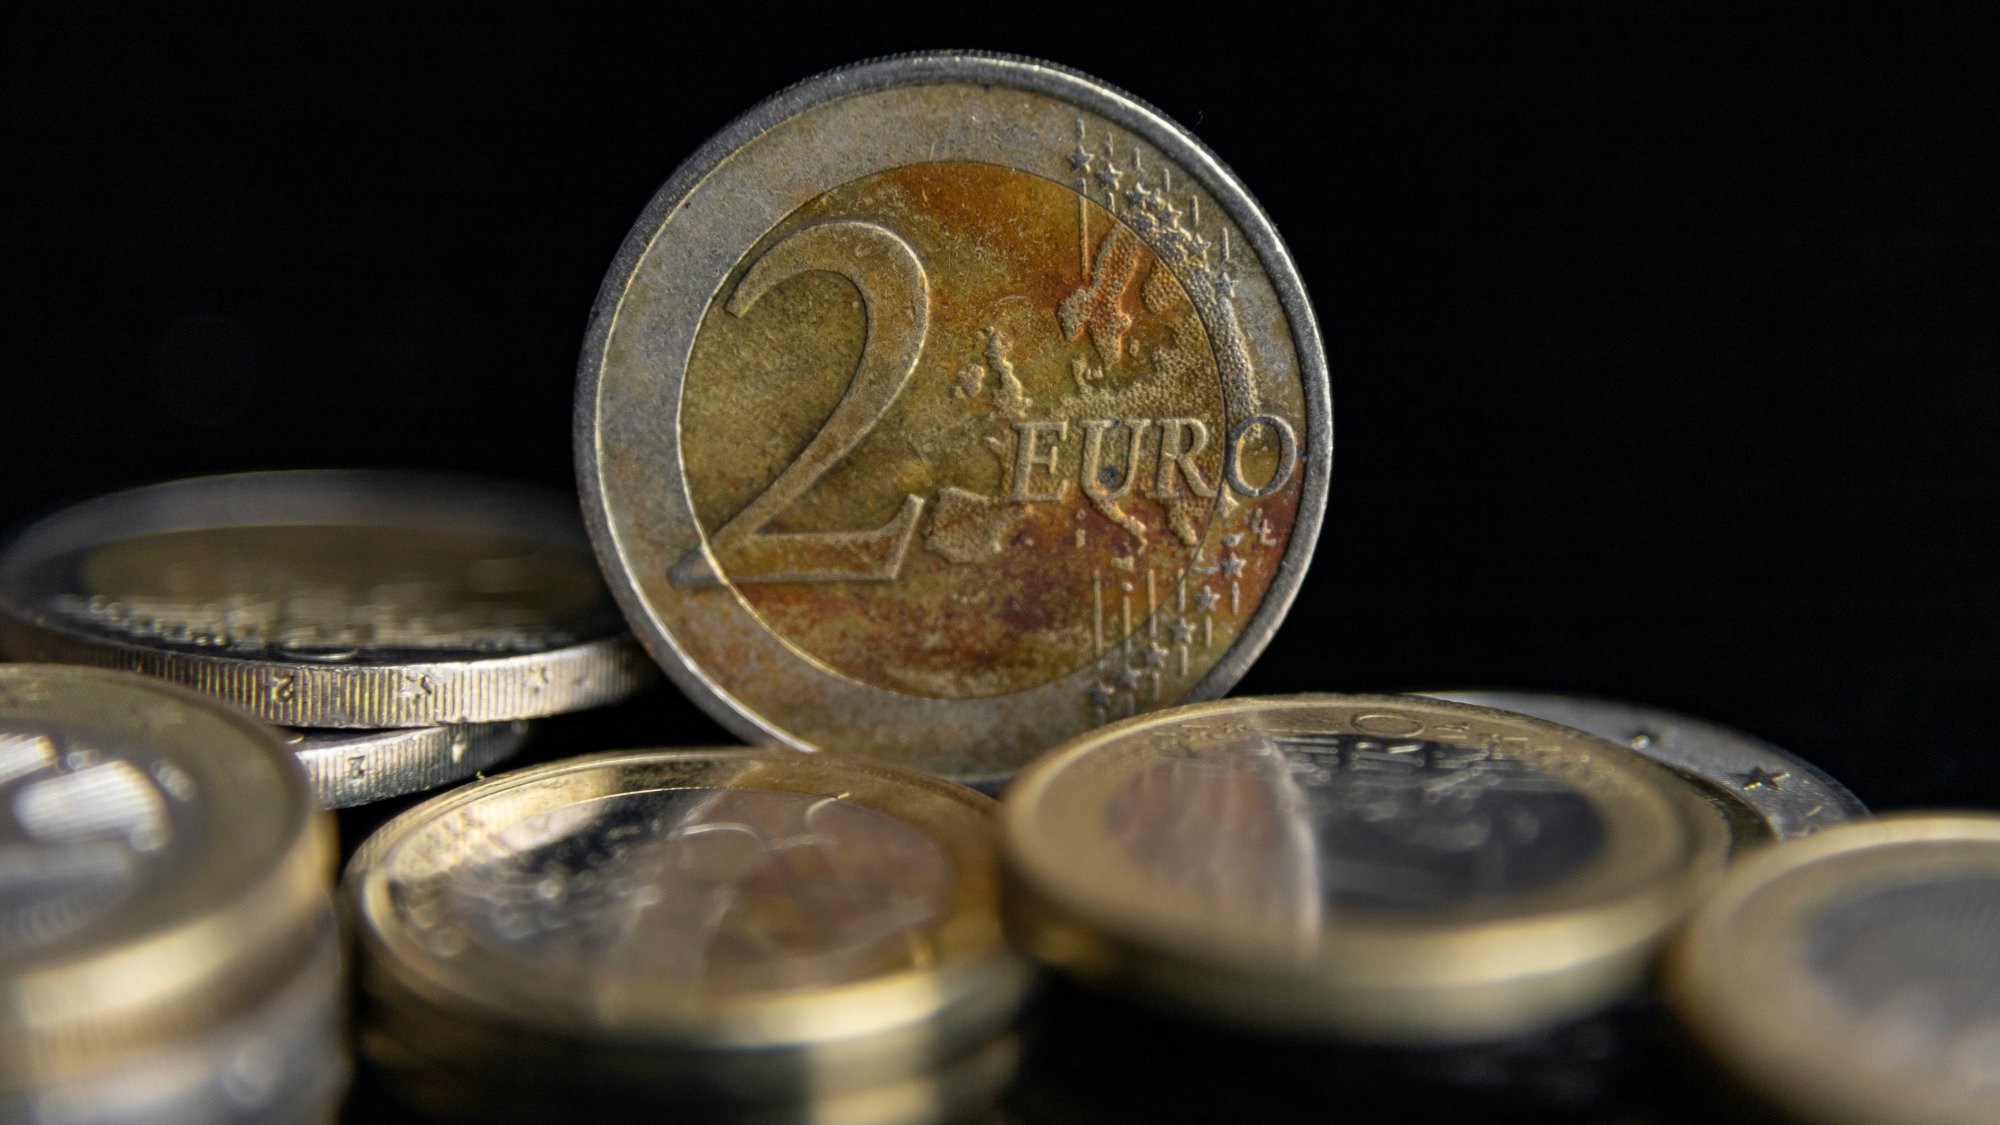 Ποιο νόμισμα των 2 ευρώ έχει εκτοξεύσει την αξία του στα ύψη